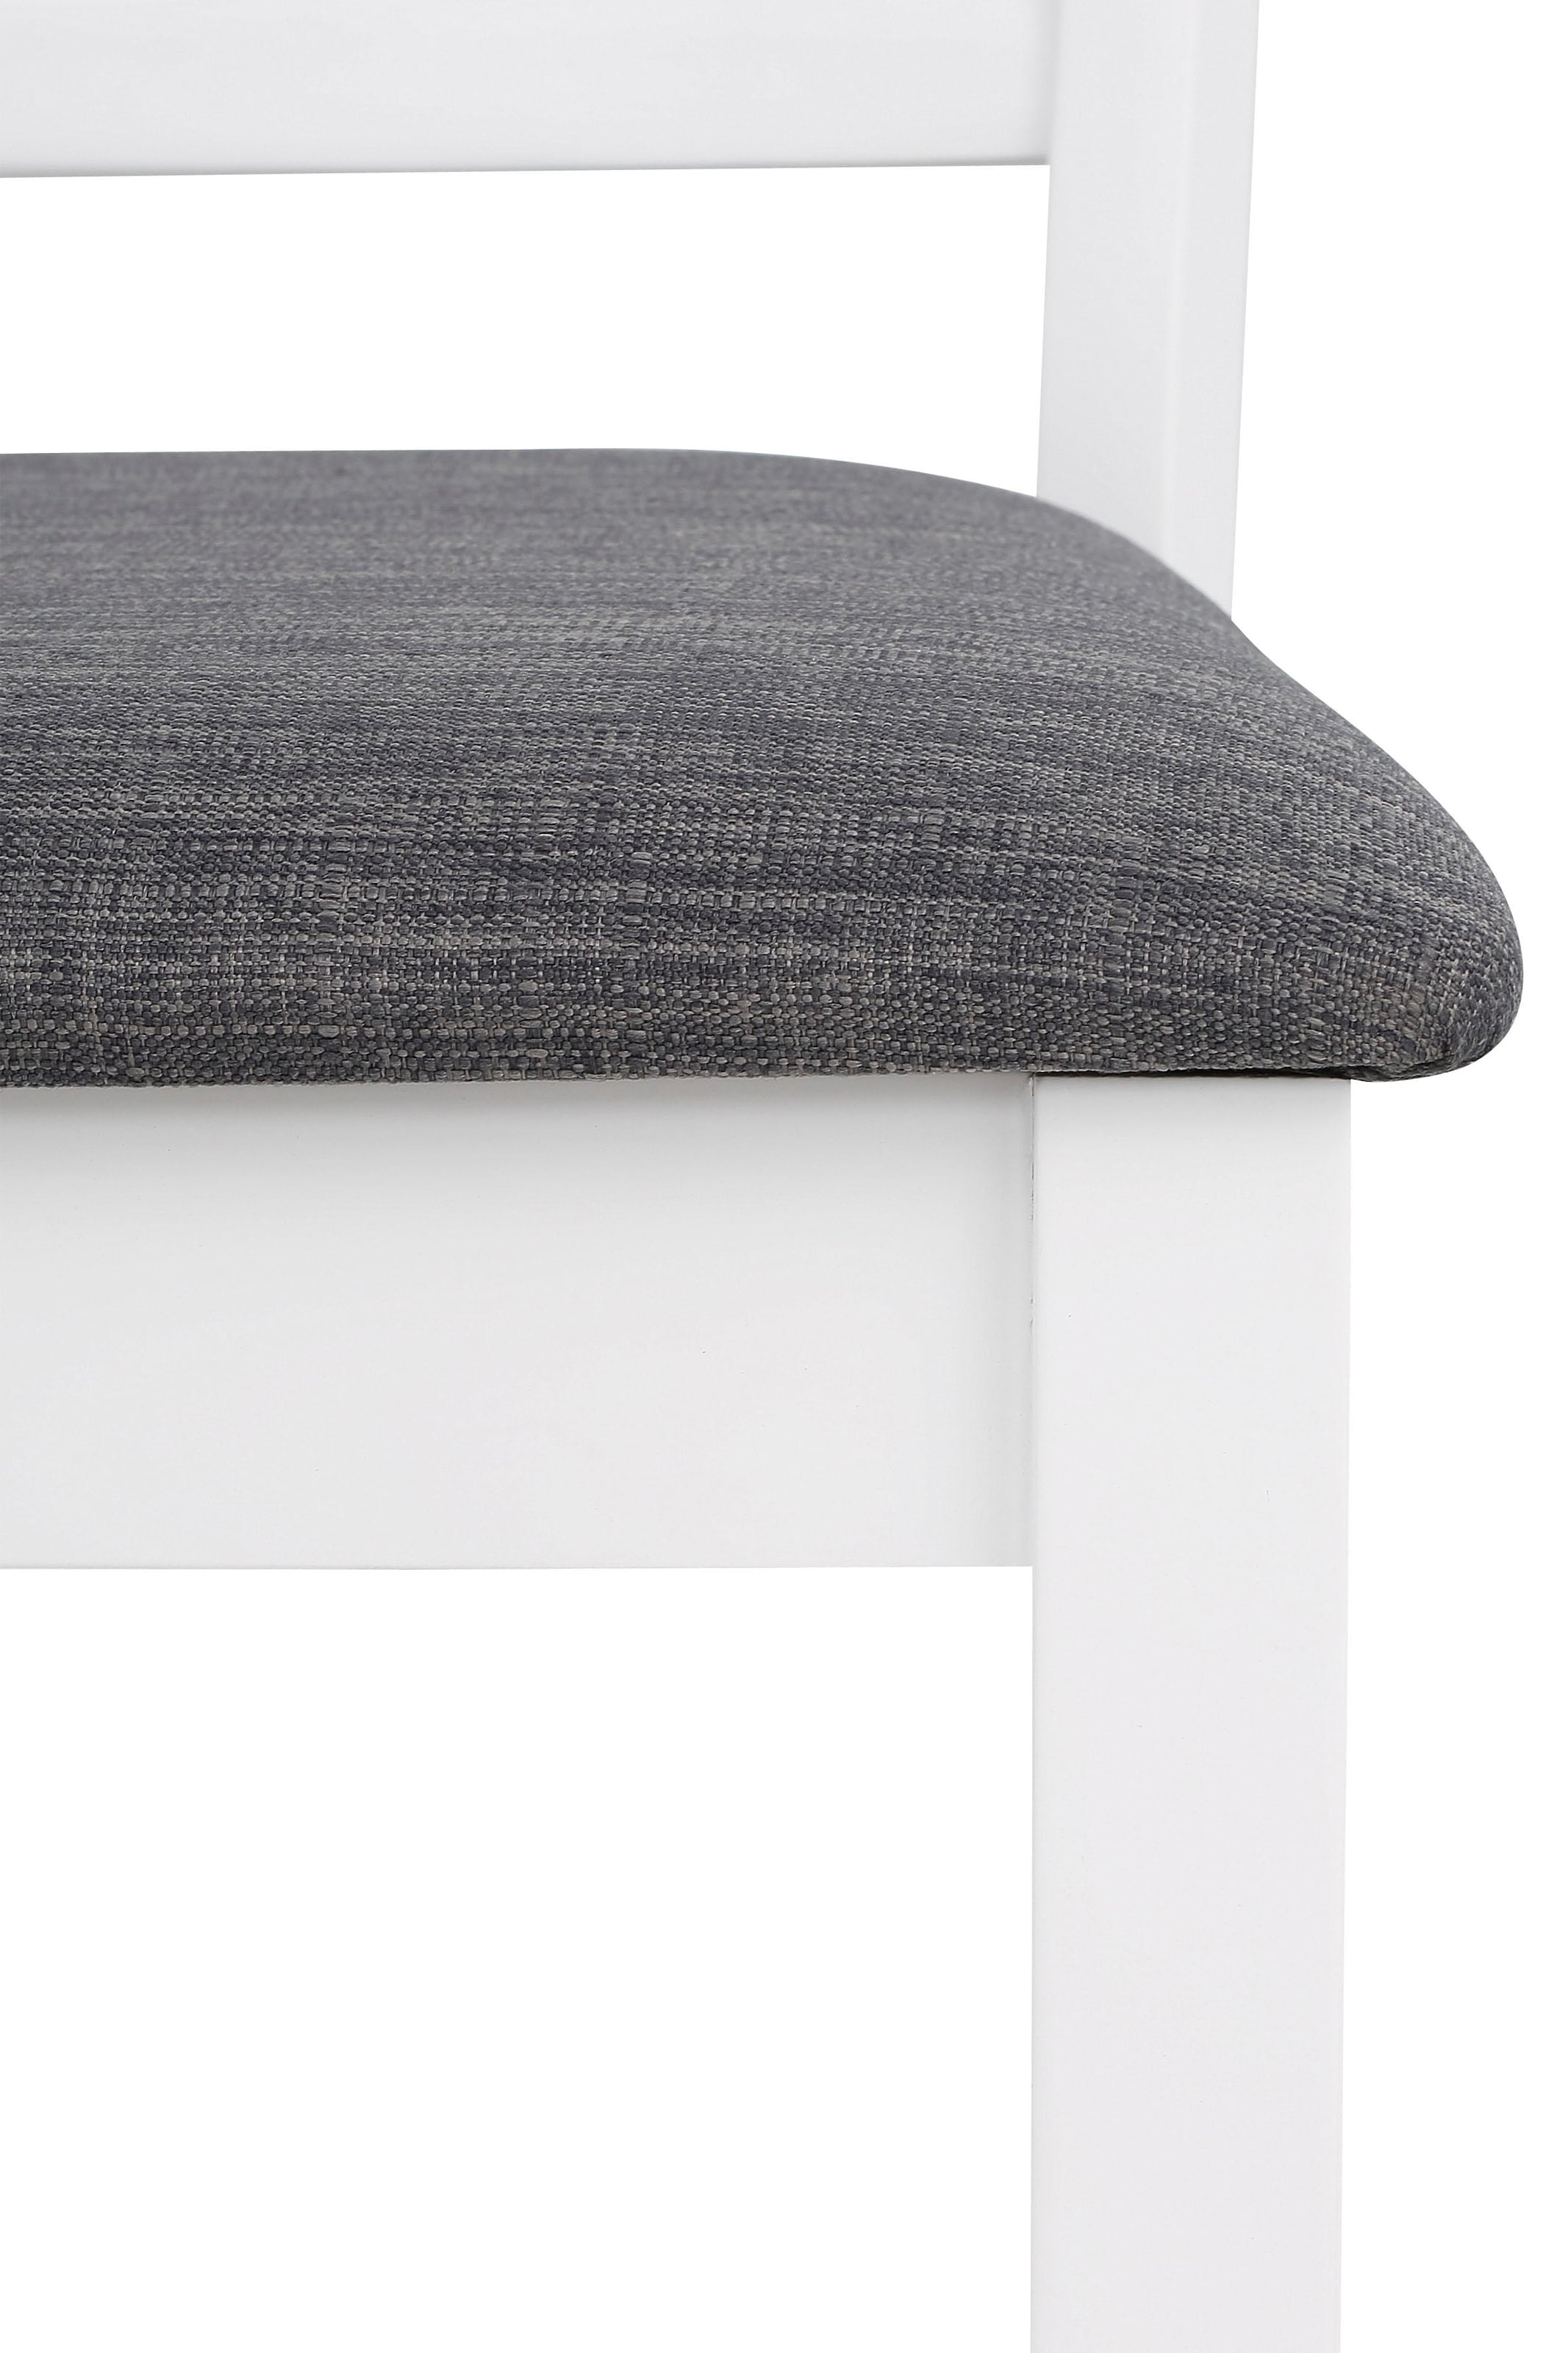 Home affaire Stuhl »Fullerton«, (Set), 2 St., Webstoff, mit schönen  Fräsungen an der Rückenlehne, Sitzhöhe 47 cm online bestellen